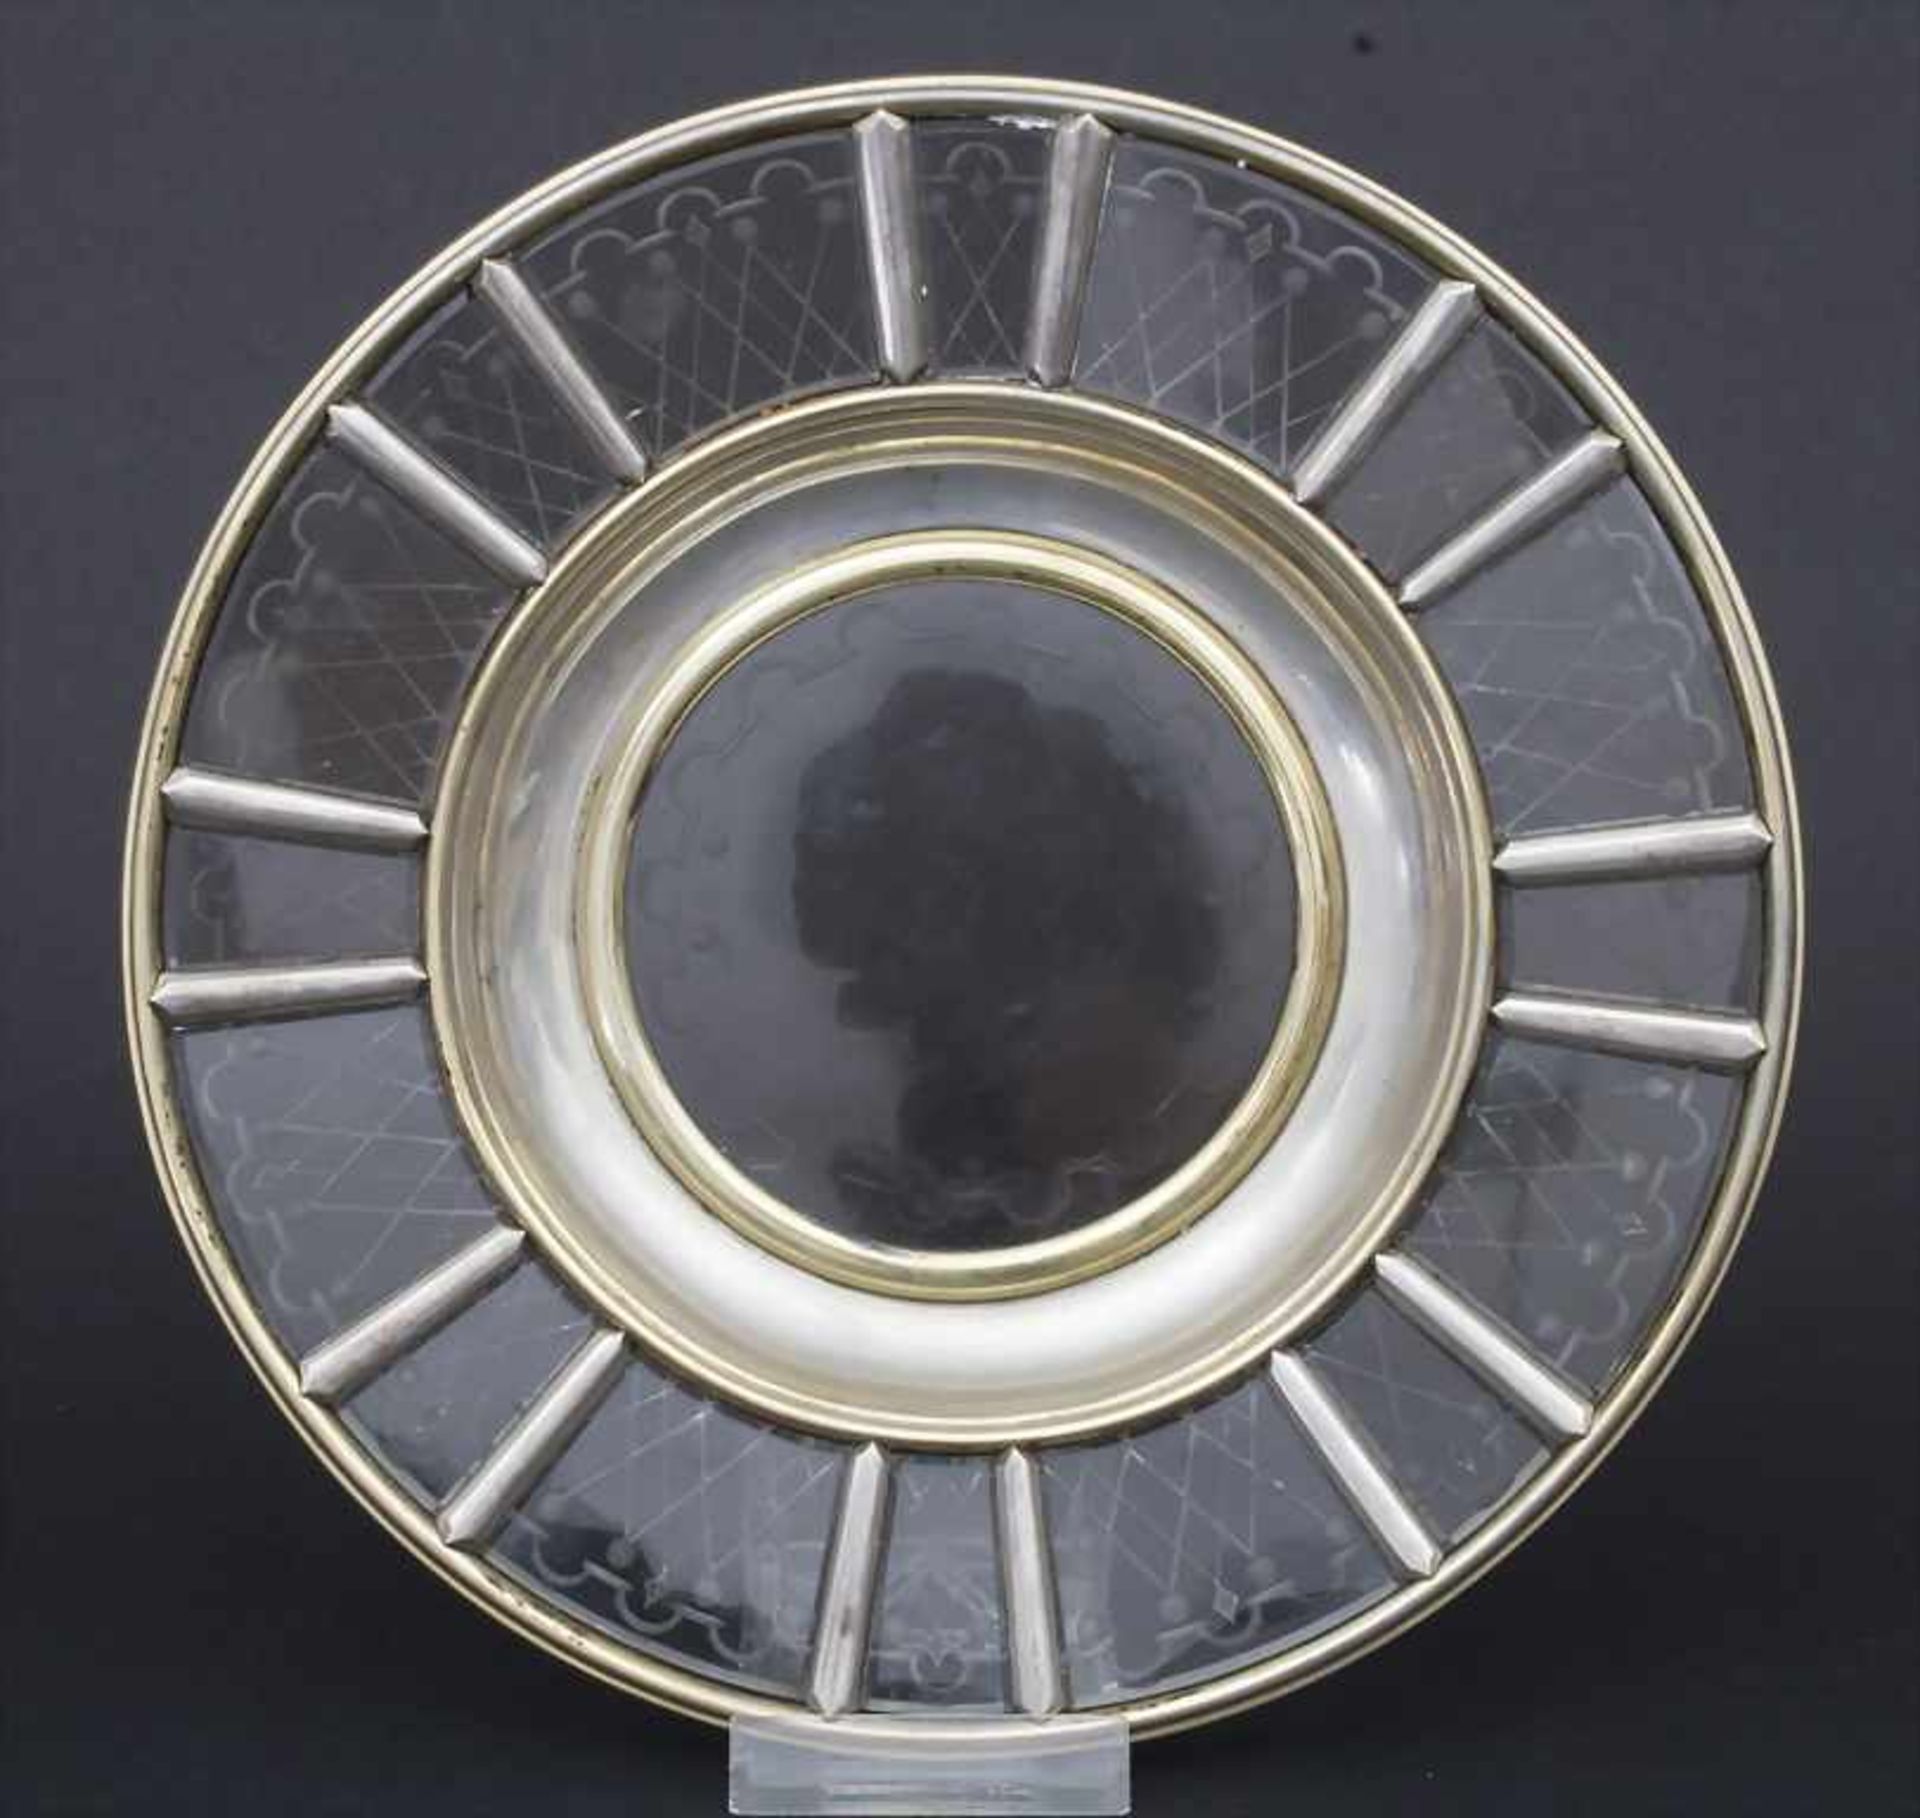 Zierteller / A glass plate, deutsch, 19. Jh.Material: Bleiglas, Silber 800/000 vergoldet,Marke: